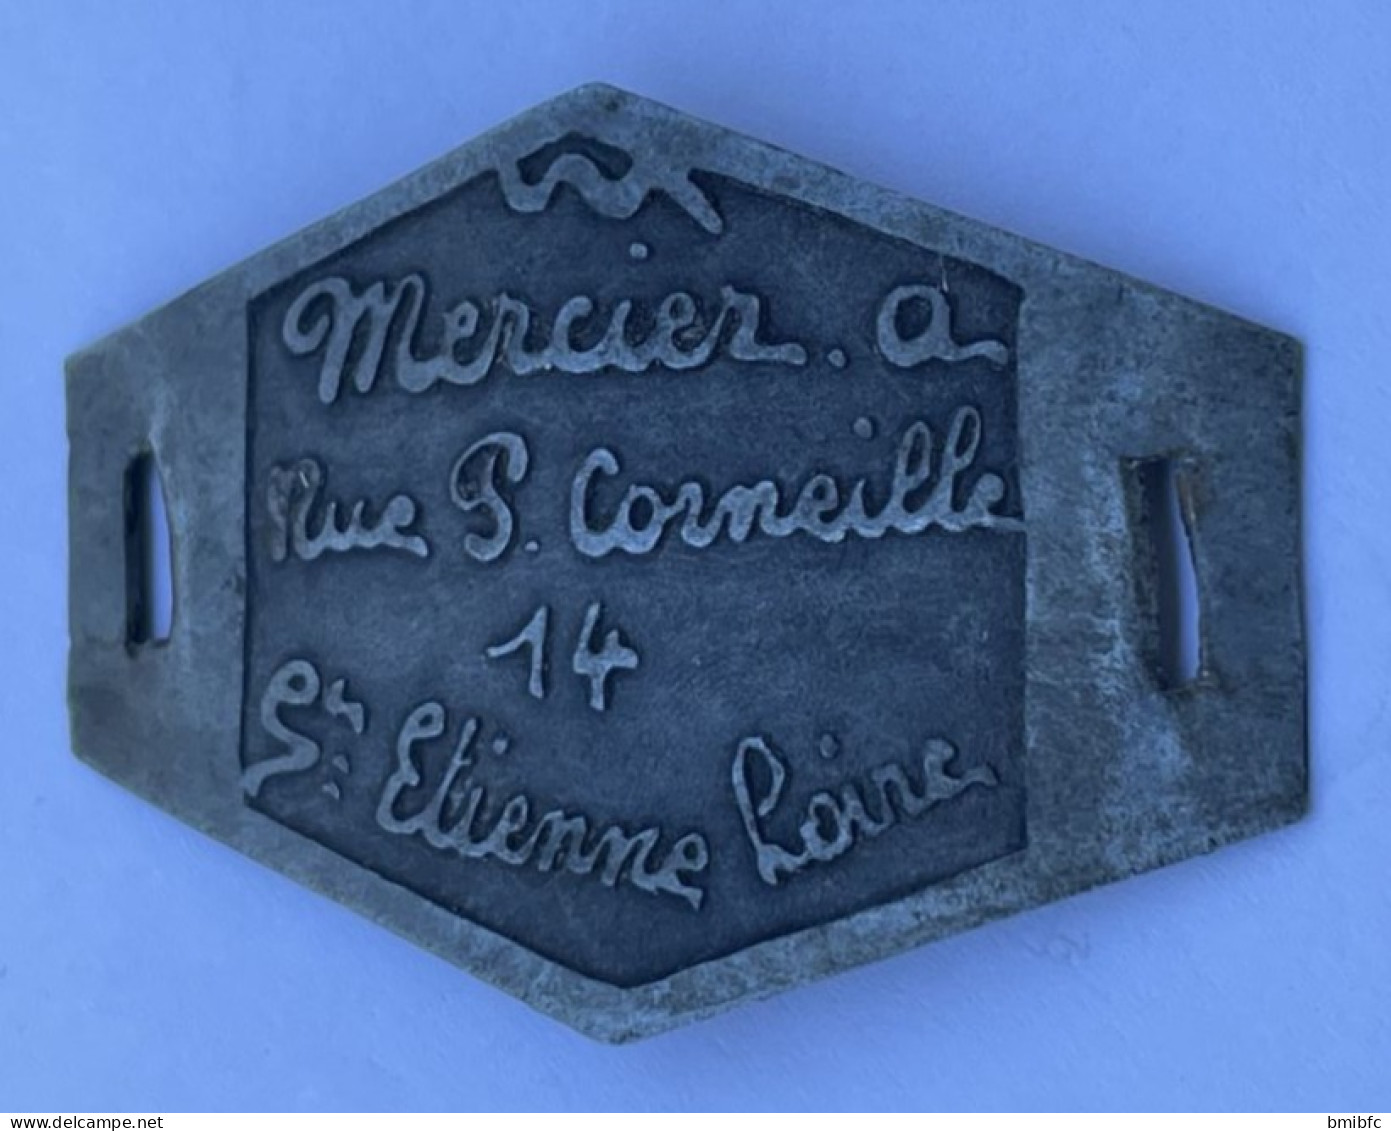 Plaque D'identité De Vélo  Mercier. A - Rue P. Corneille 14 St Etienne Loire - Number Plates